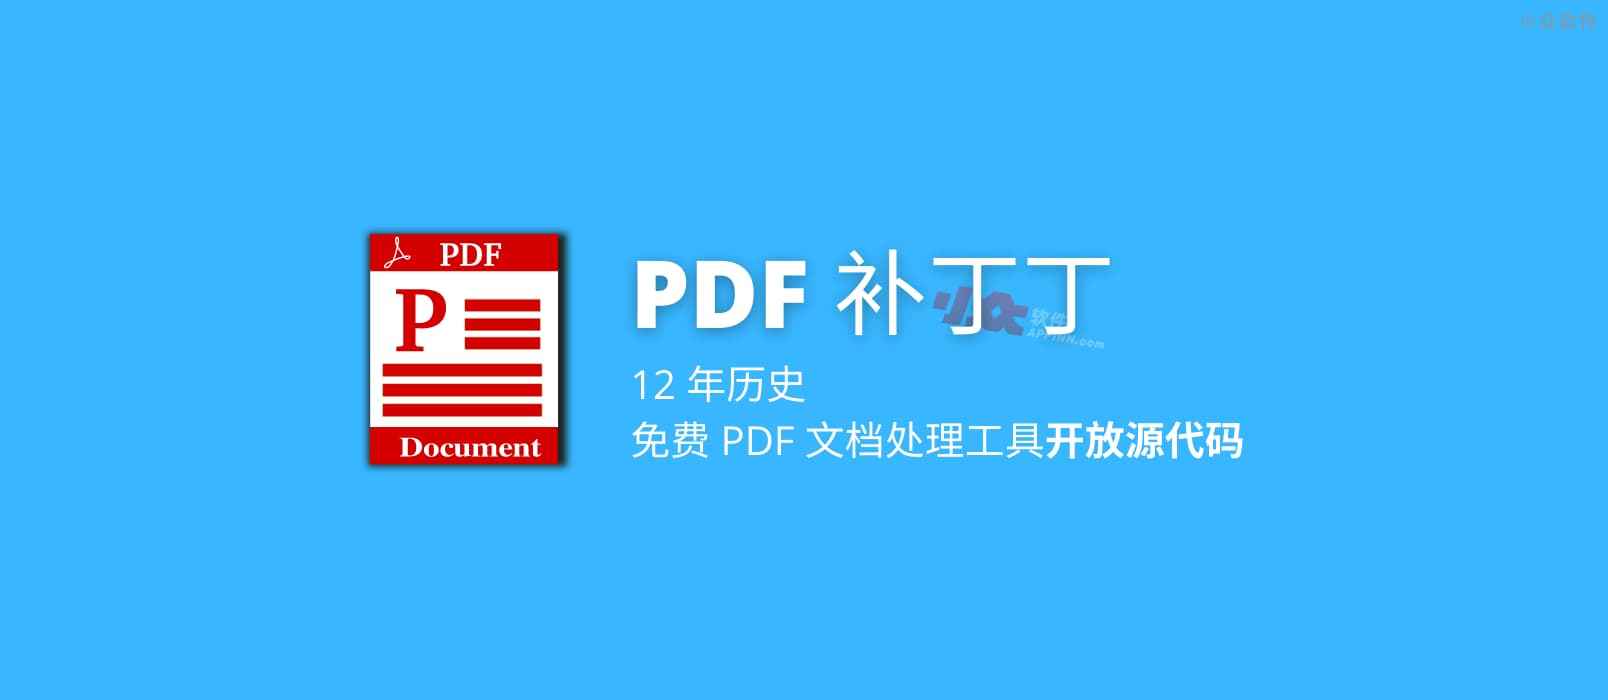 12 年历史，免费 PDF 文档处理工具「PDF 补丁丁」开放源代码